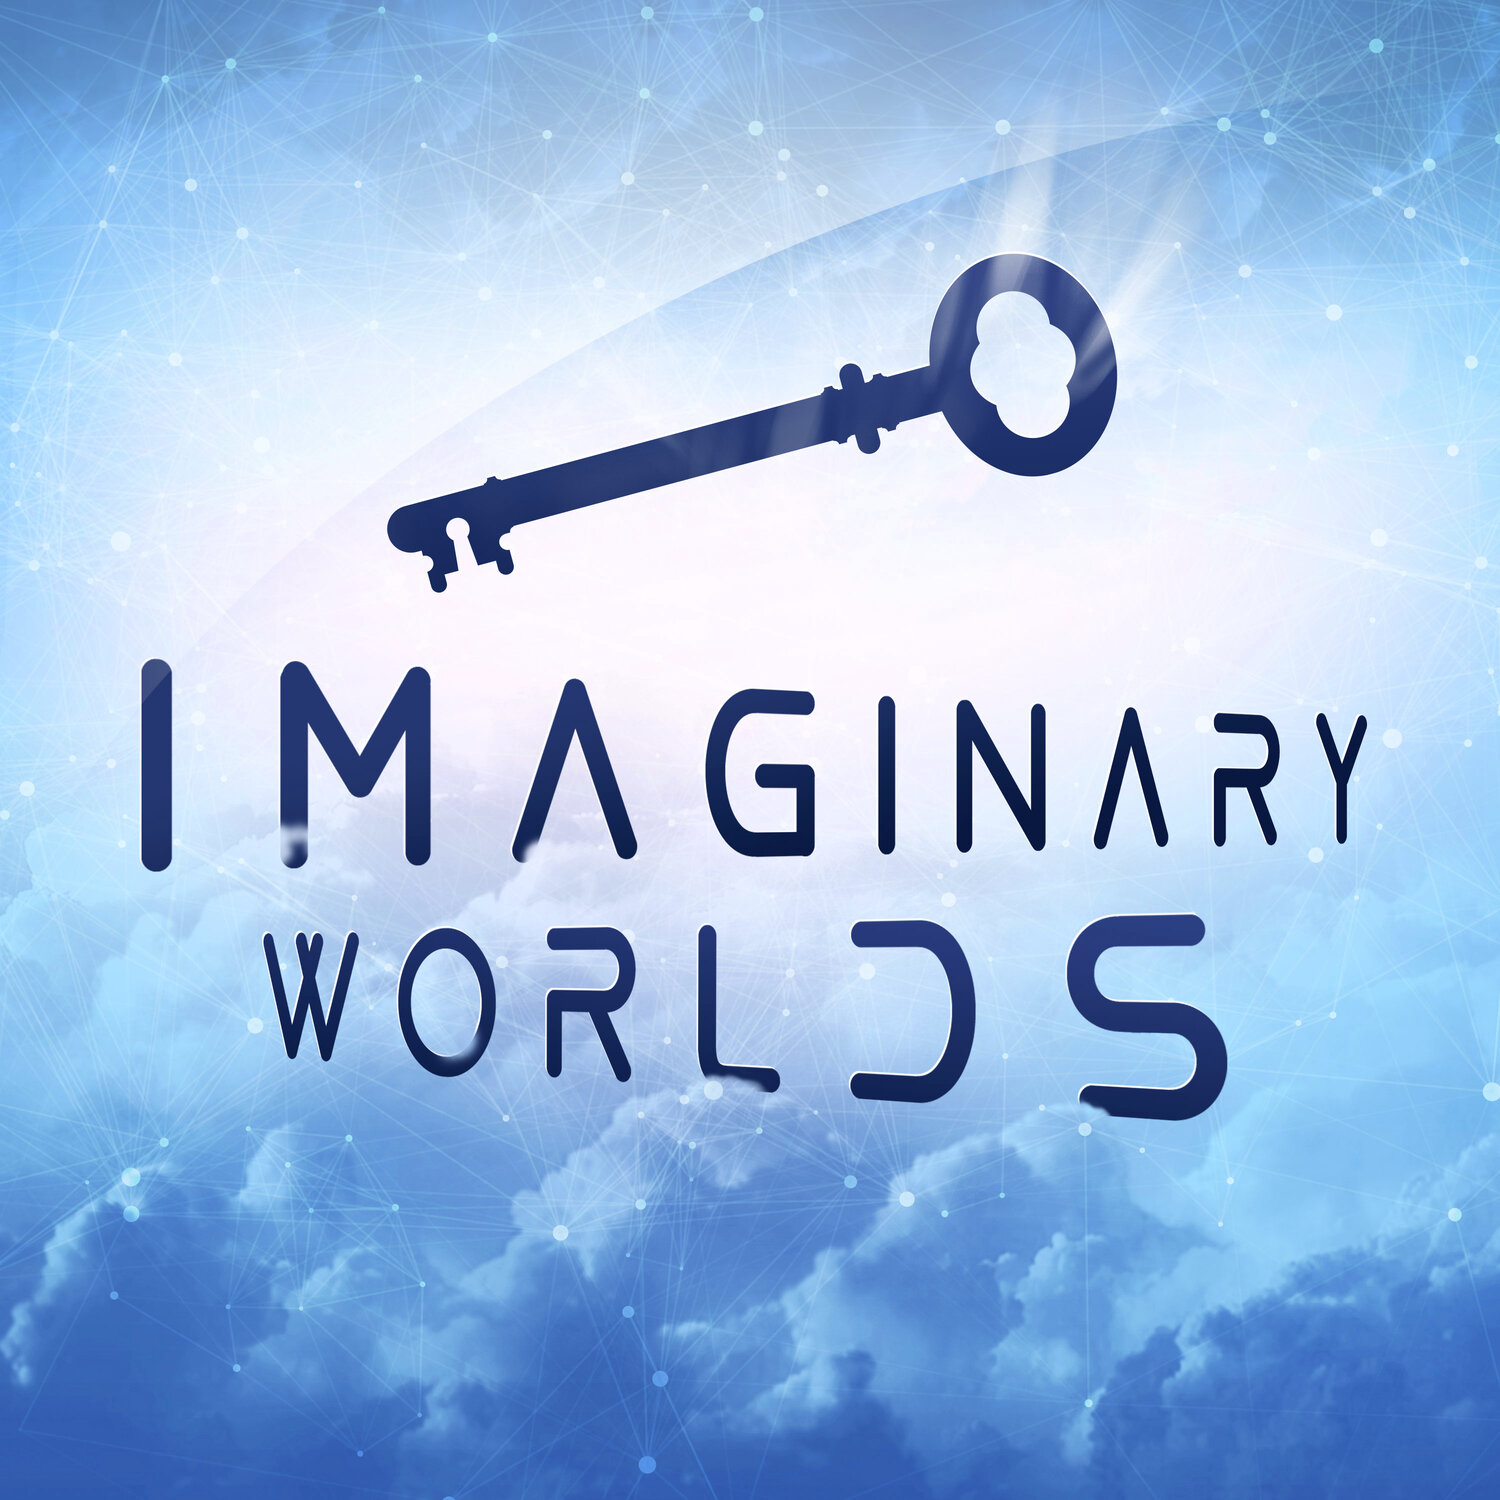 Imaginary world. Imaginary. The Imaginary World of. My Imaginary World. The Power of Imaginary big dick.